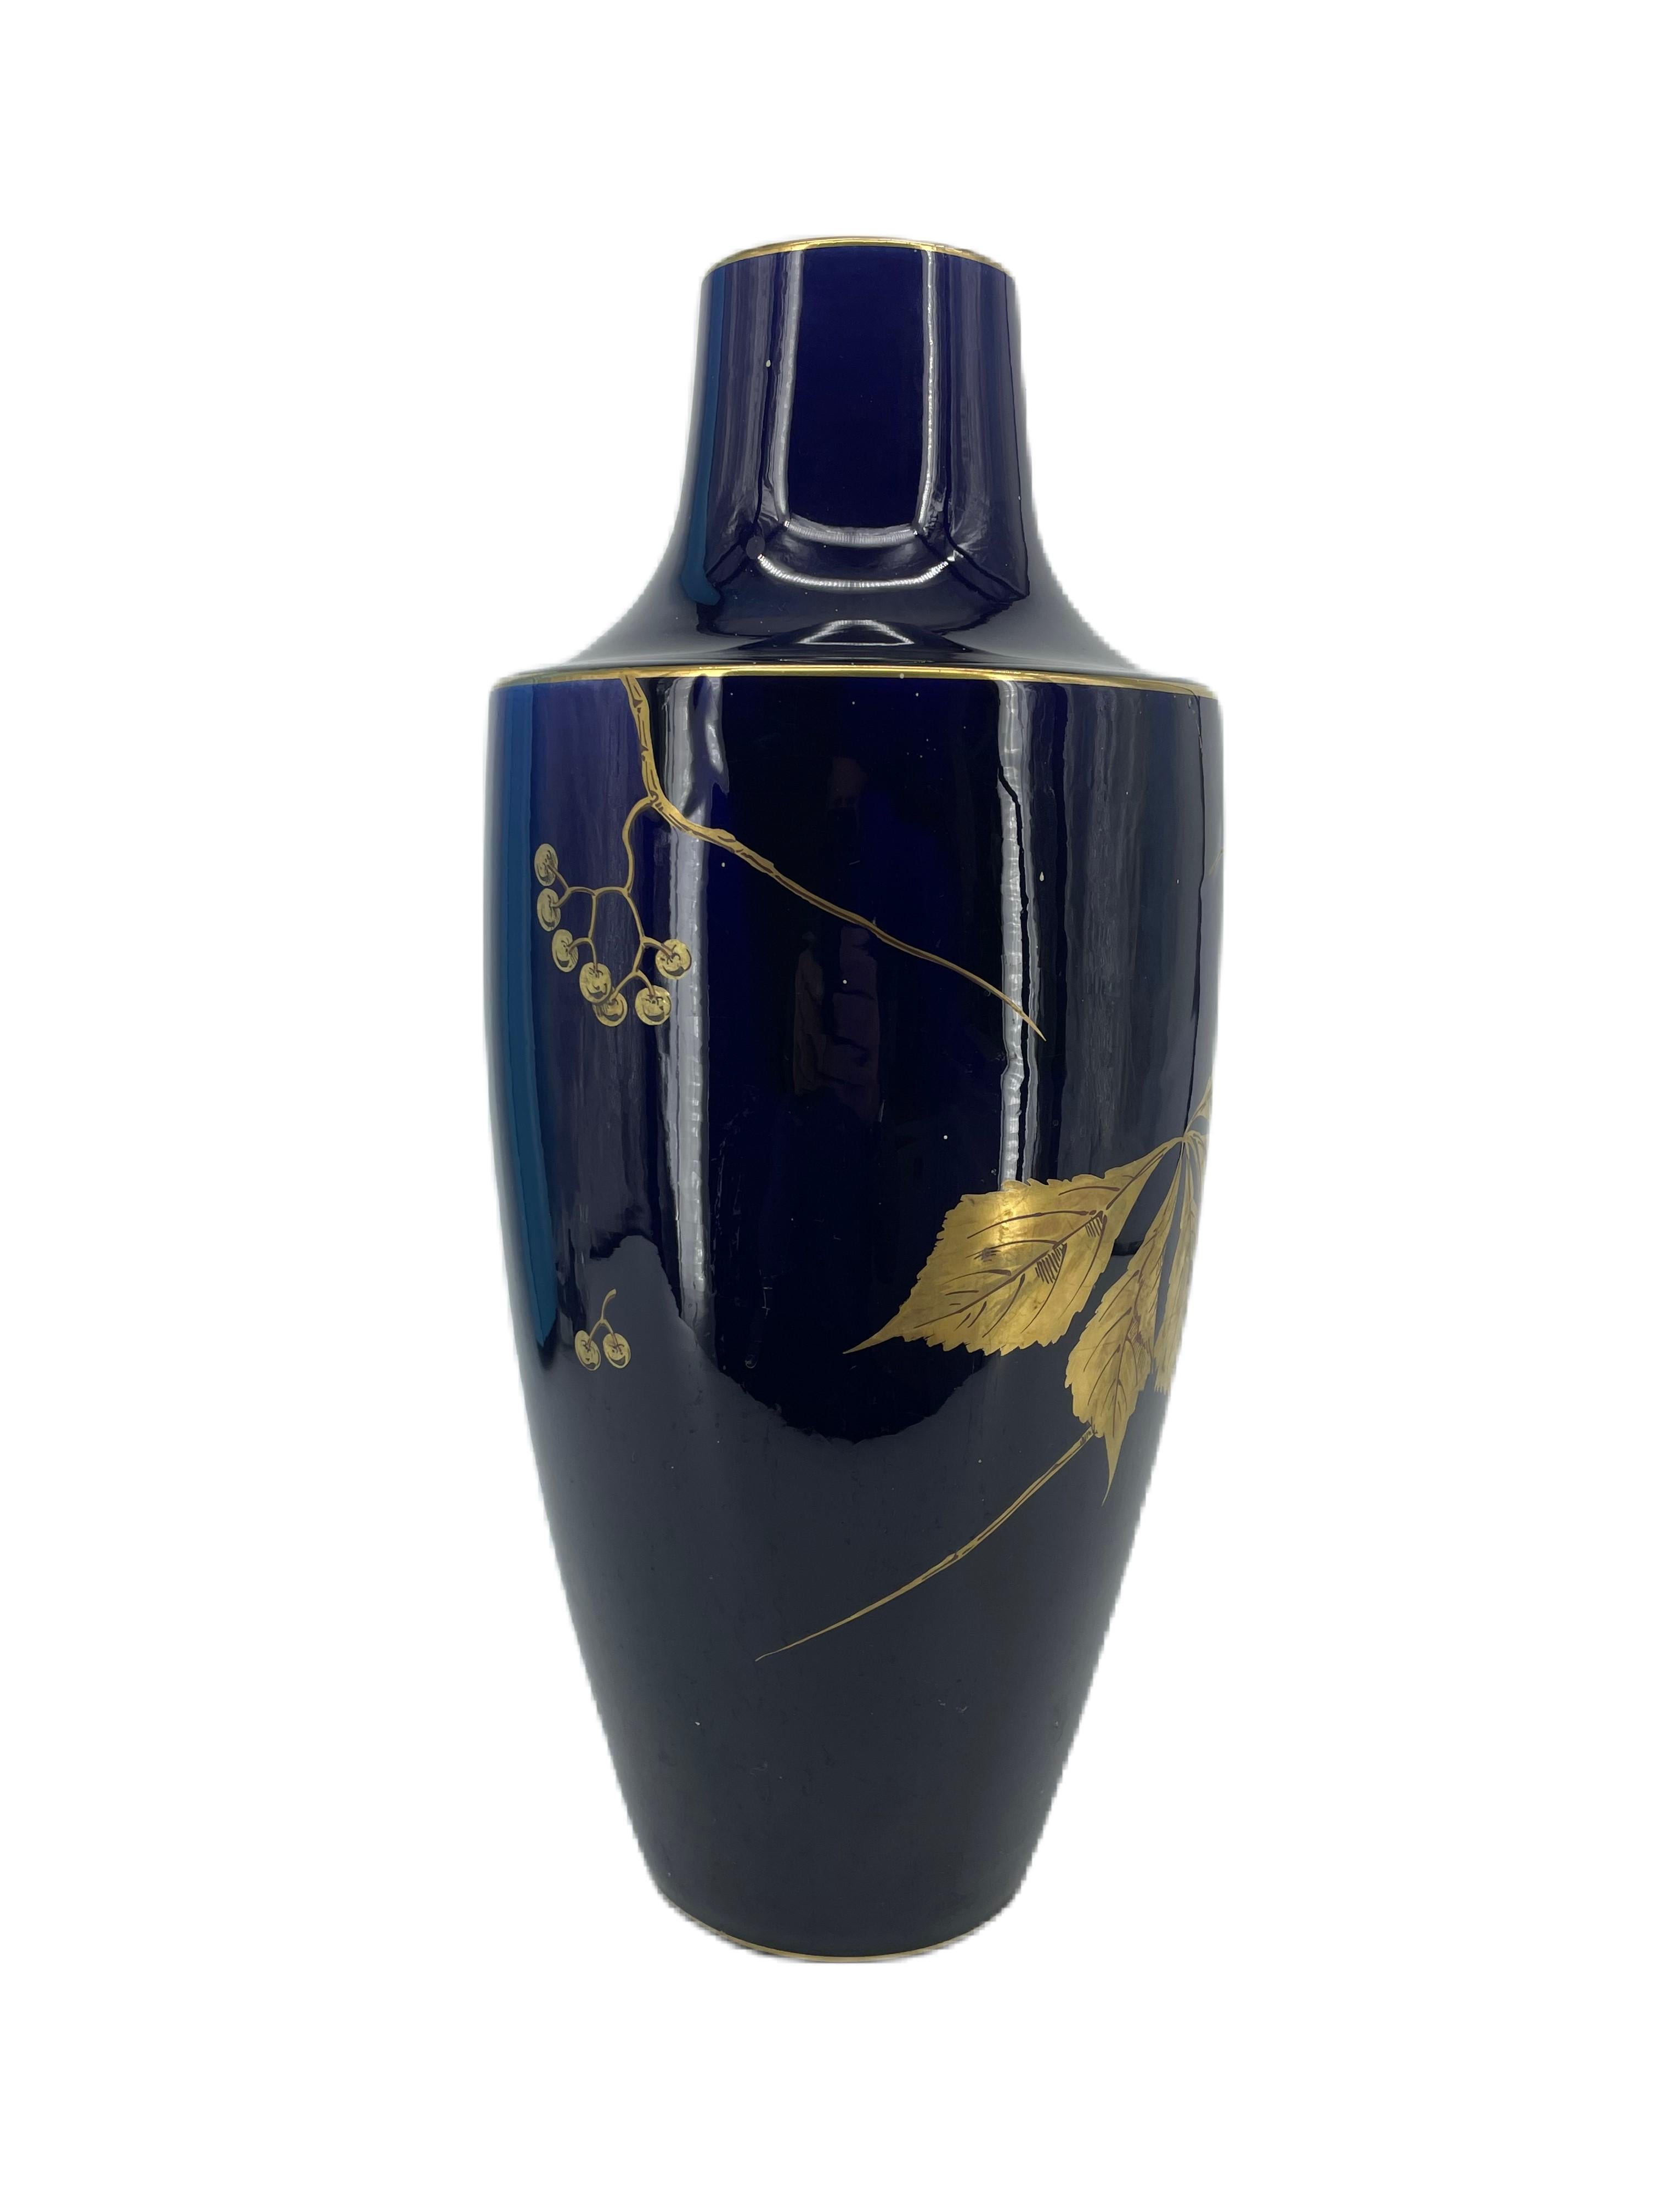 Grand vase en céramique bleu tours de Gustave Asch, 1900

Frédéric Gustave Asch (1856-1911)

Un joli vase de forme en Porcelaine à décor doré de branches de baies et de baies dans leur bogue, sur un fond bleu de Tours. Le motif qui recouvre le col